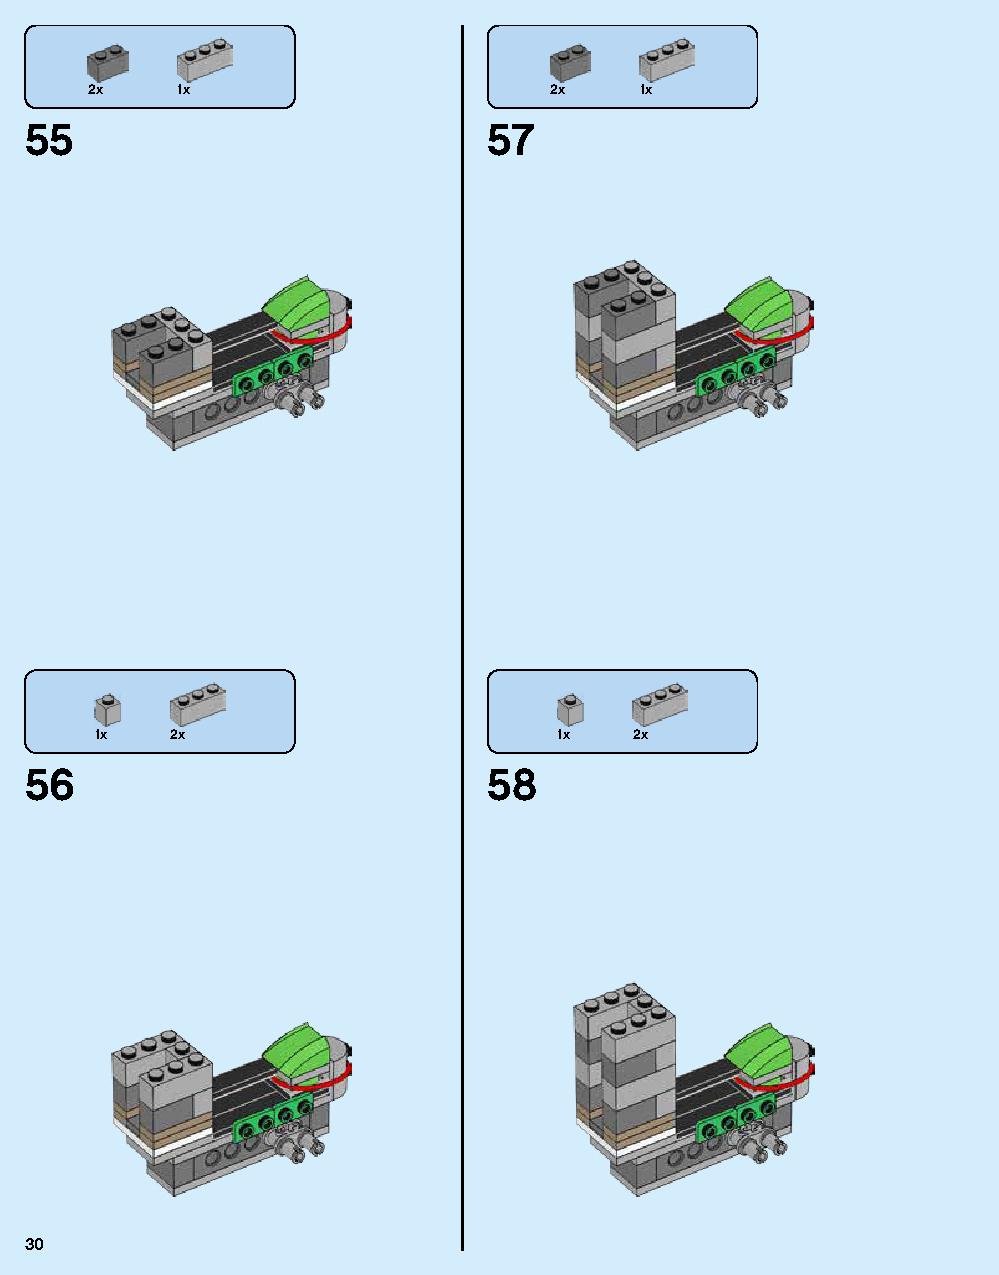 ニンジャゴー シティ 70620 レゴの商品情報 レゴの説明書・組立方法 30 page